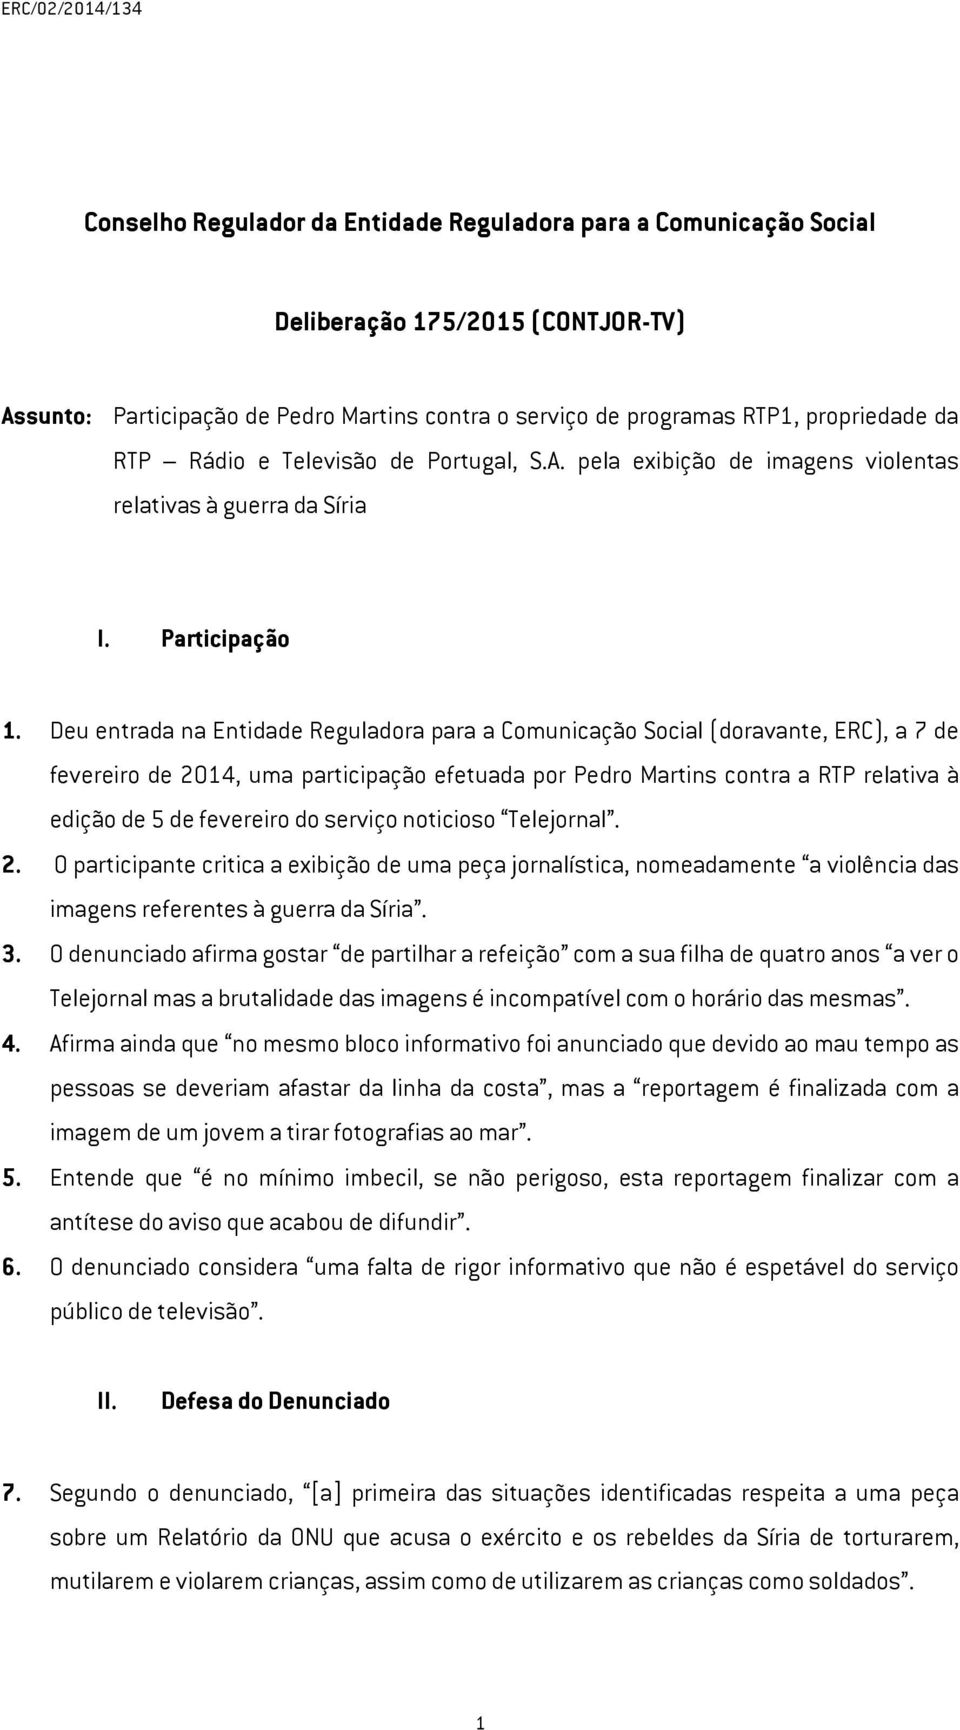 Deu entrada na Entidade Reguladora para a Comunicação Social (doravante, ERC), a 7 de fevereiro de 2014, uma participação efetuada por Pedro Martins contra a RTP relativa à edição de 5 de fevereiro